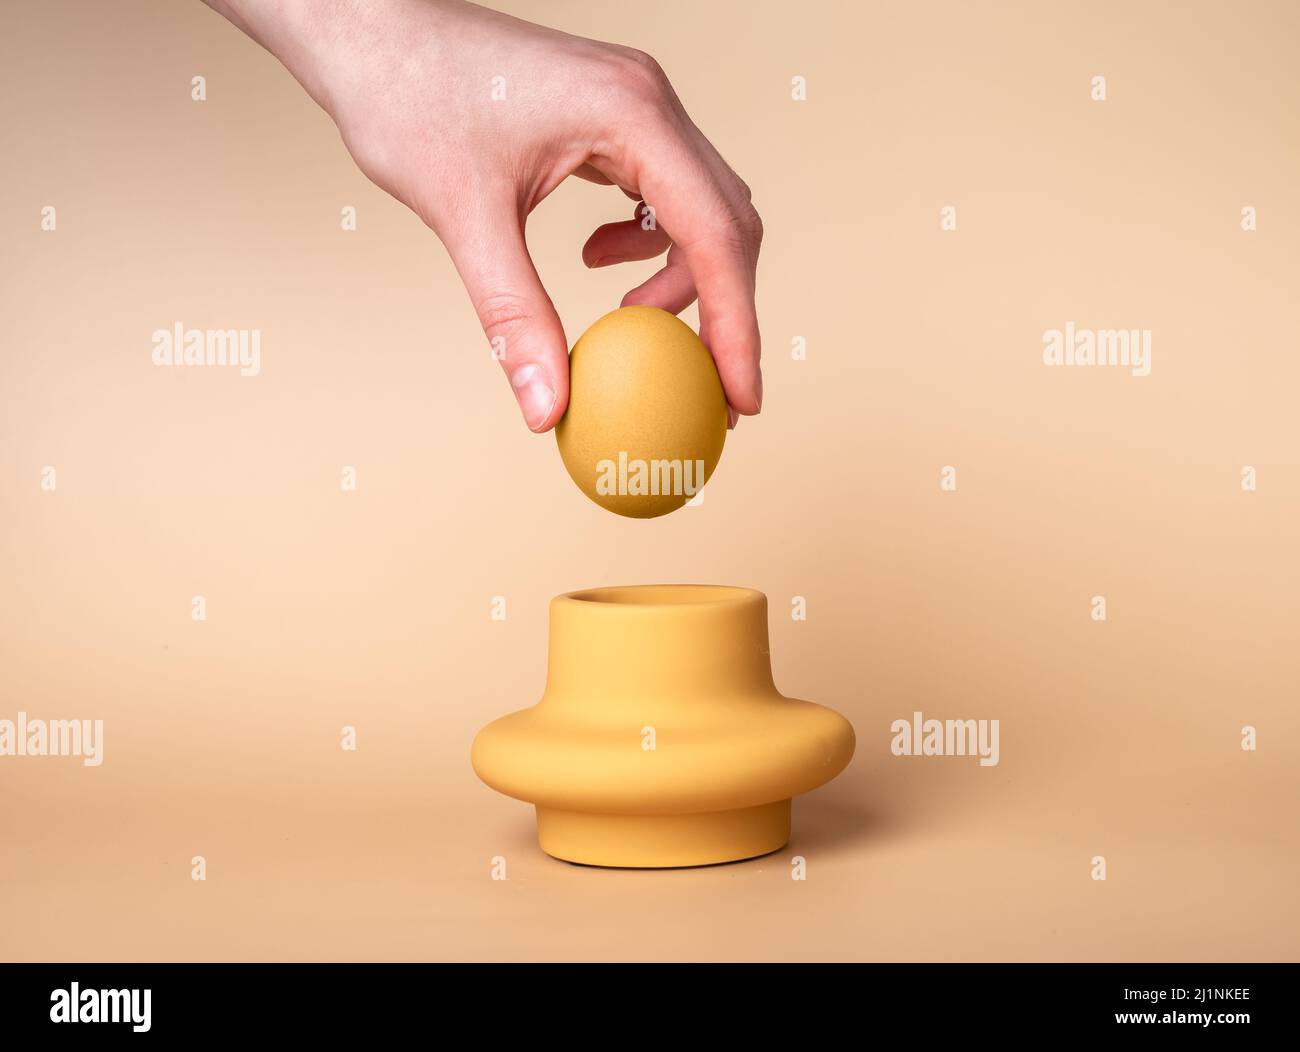 Femme à la main mettant l'œuf beige dans la tasse. Porte-œufs et serveur. Concept de Pâques. Photo de haute qualité Banque D'Images